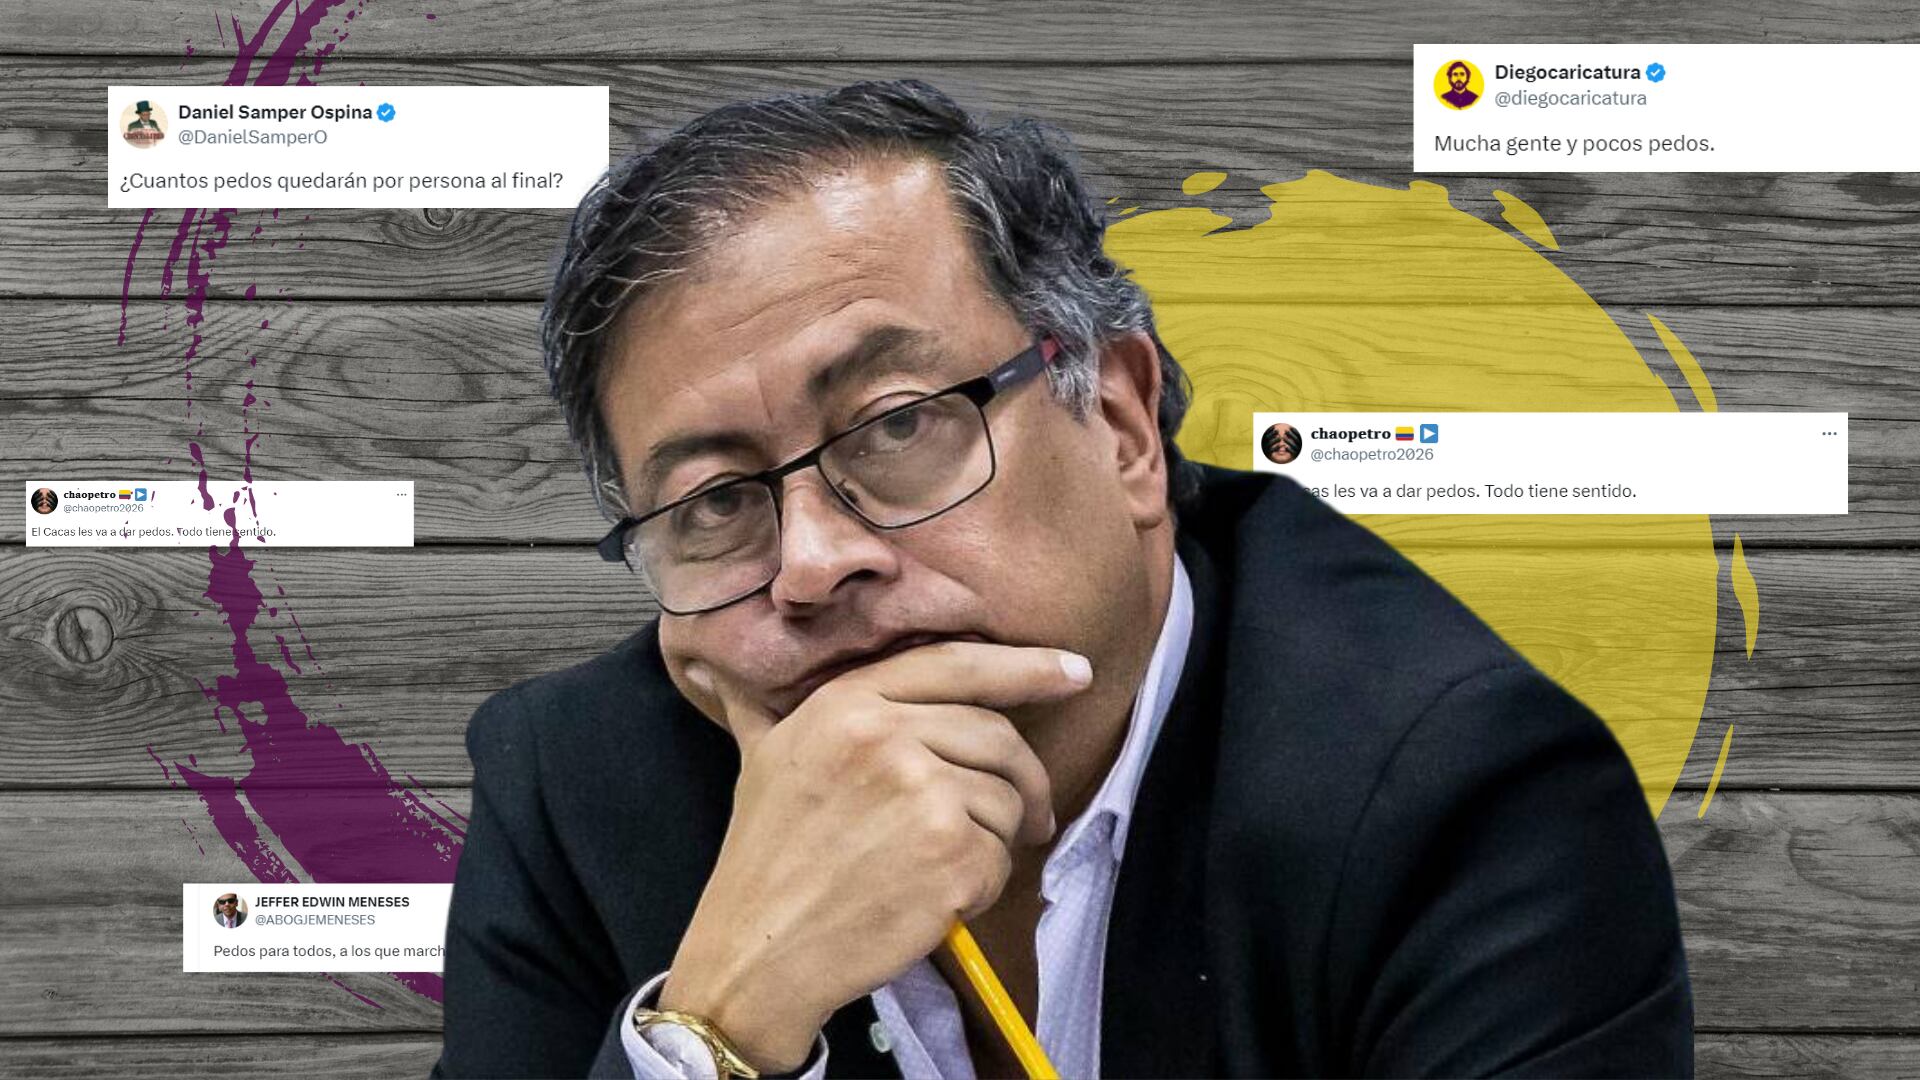 El presidente Gustavo Petro Urrego generó una controversia en redes sociales por sus errores ortográficos presentes en su publicación - crédito Infobae